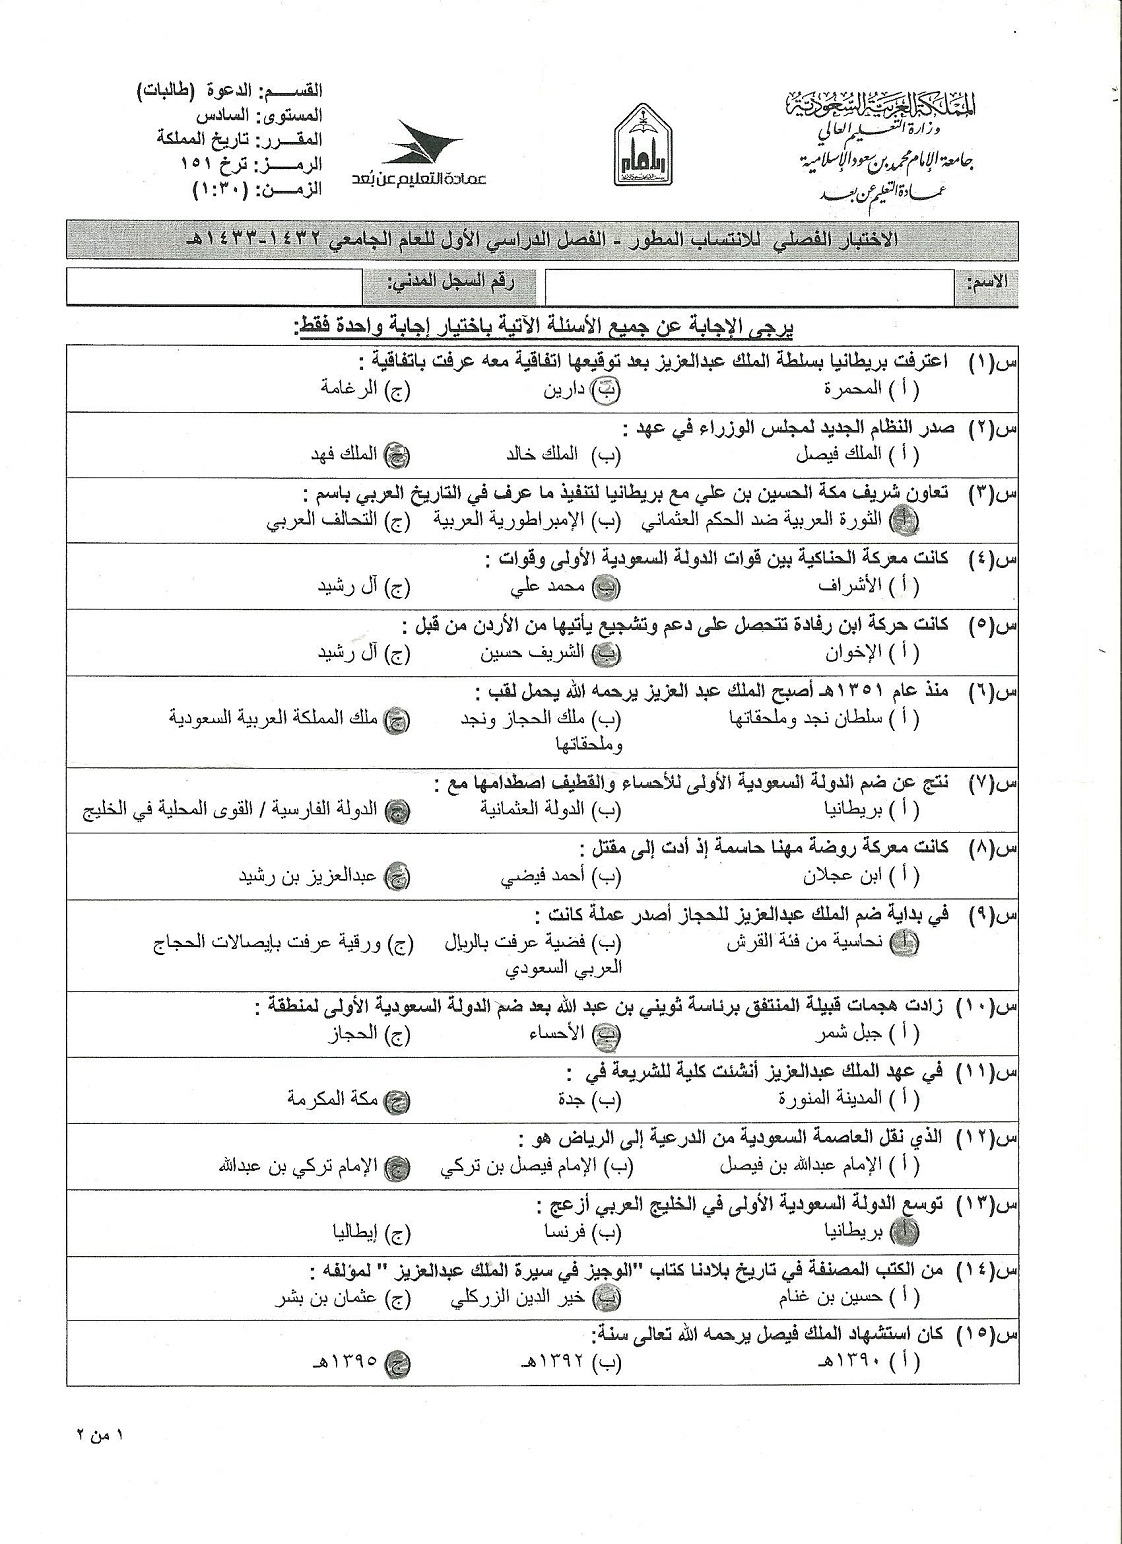 اسئلة اختبار تاريخ المملكة العربية السعودية ترخ 102 الفصل الأول 1437هـ المستوى الأول تاريخ المملكة العربية السعودية ترخ 102 جامعة الامام محمد بن سعود الاسلامية